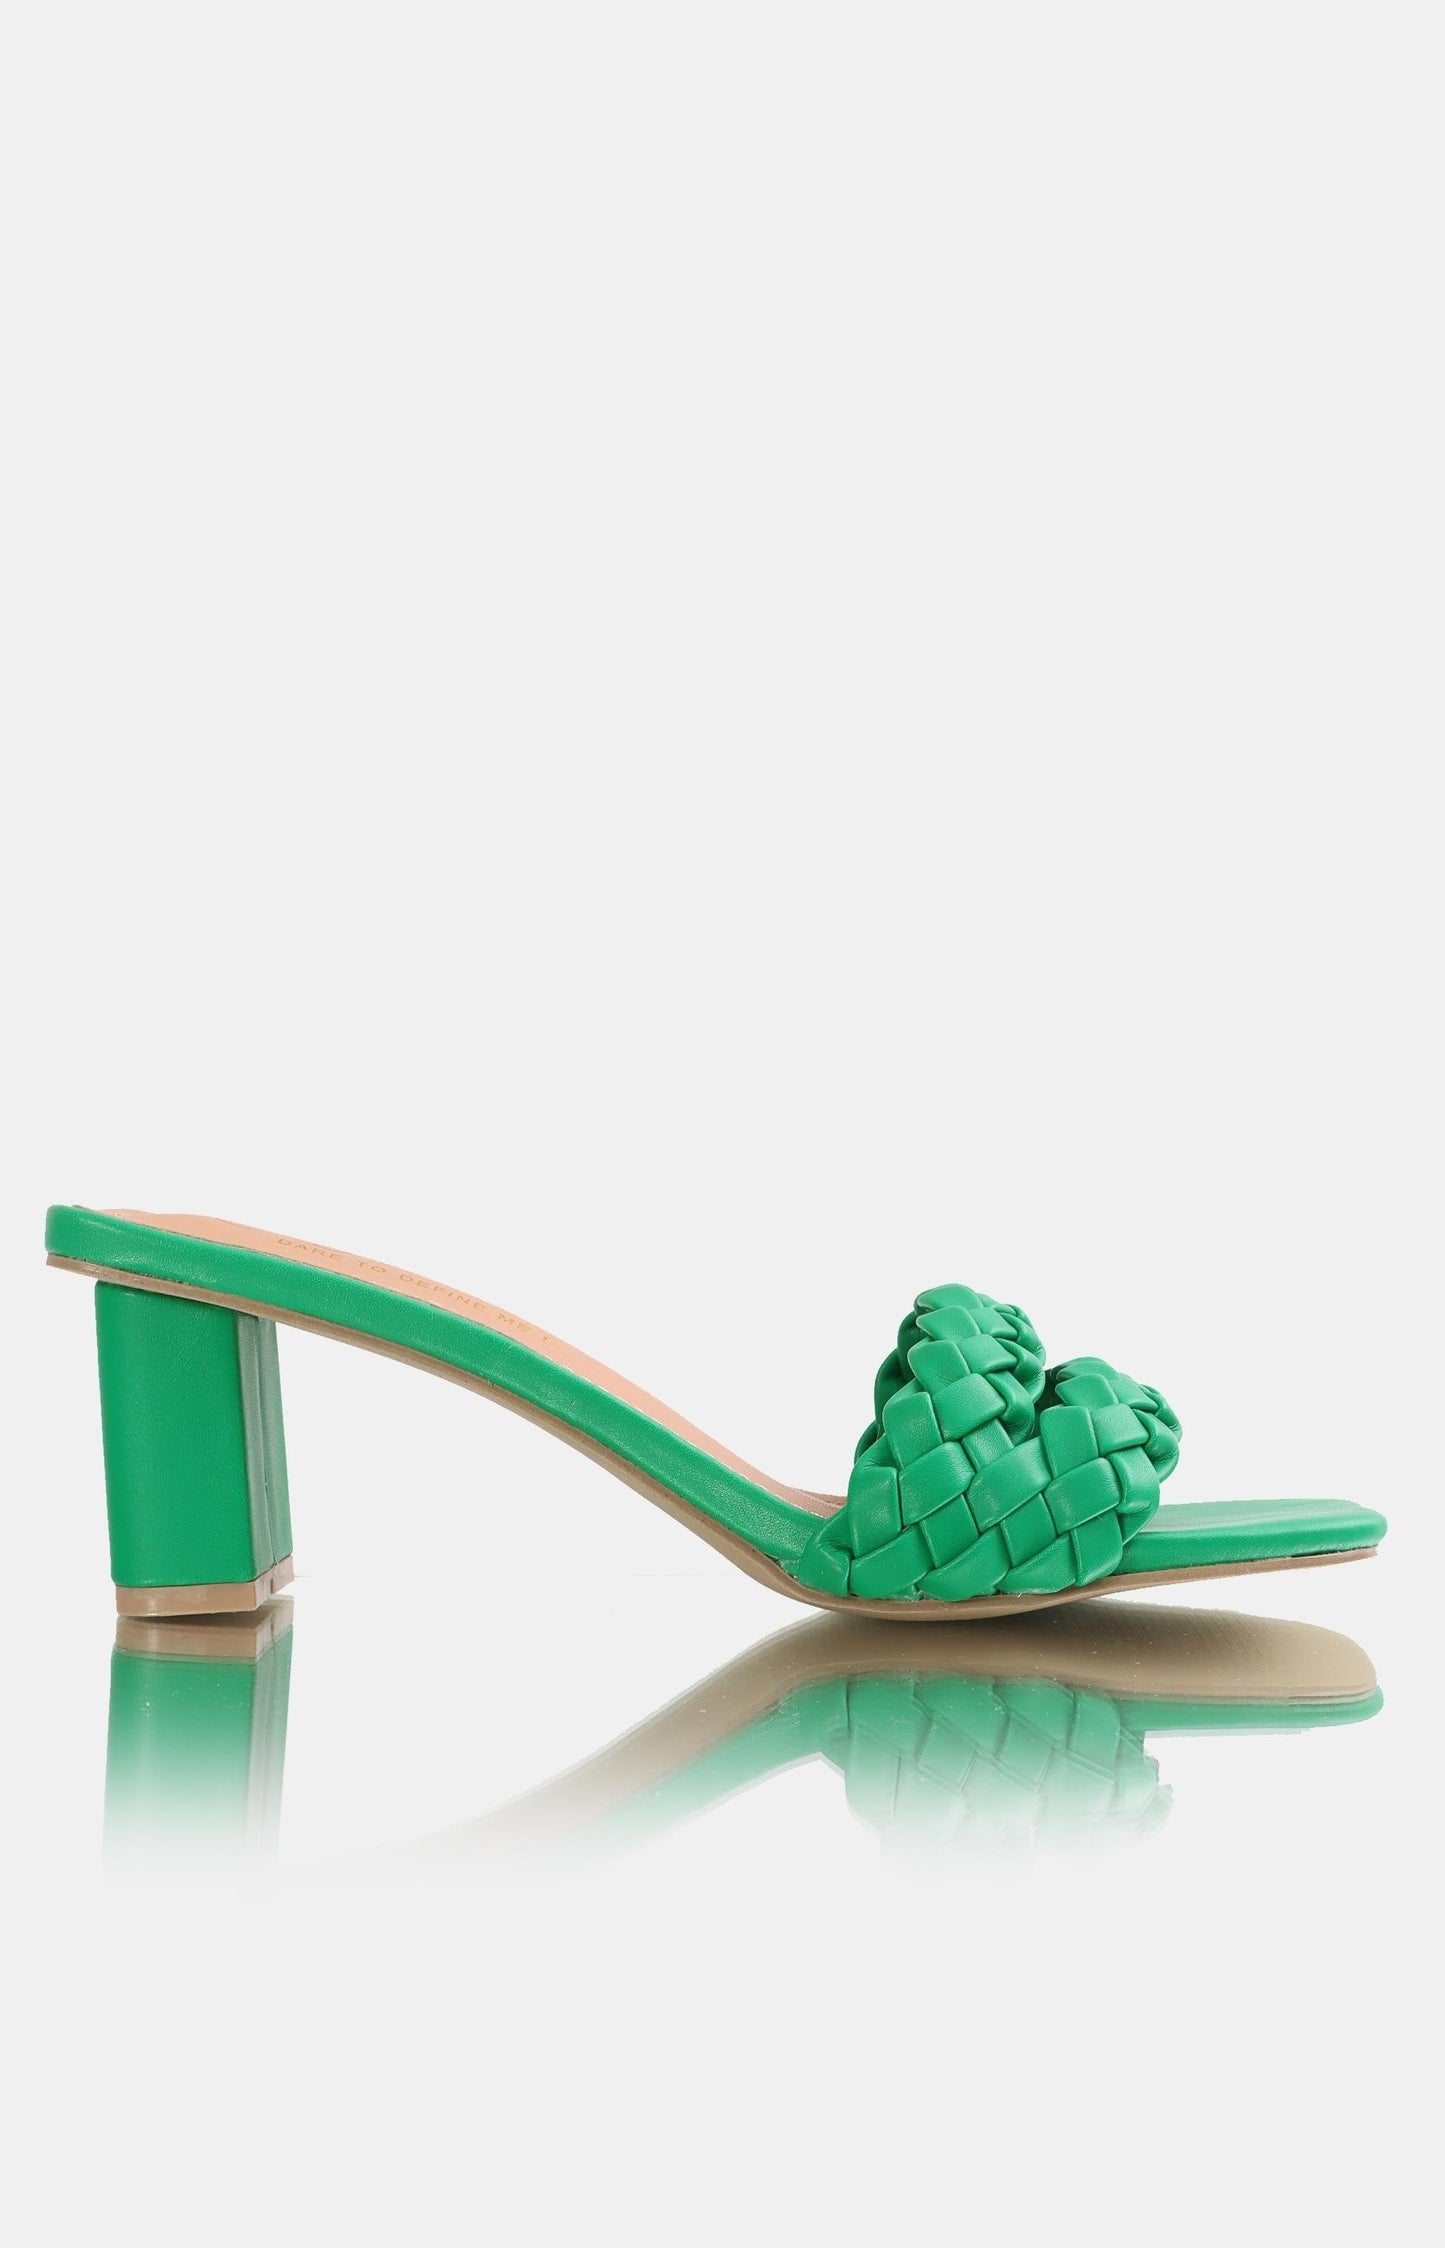 Ladies Slip On Block Heel Sandals - Green